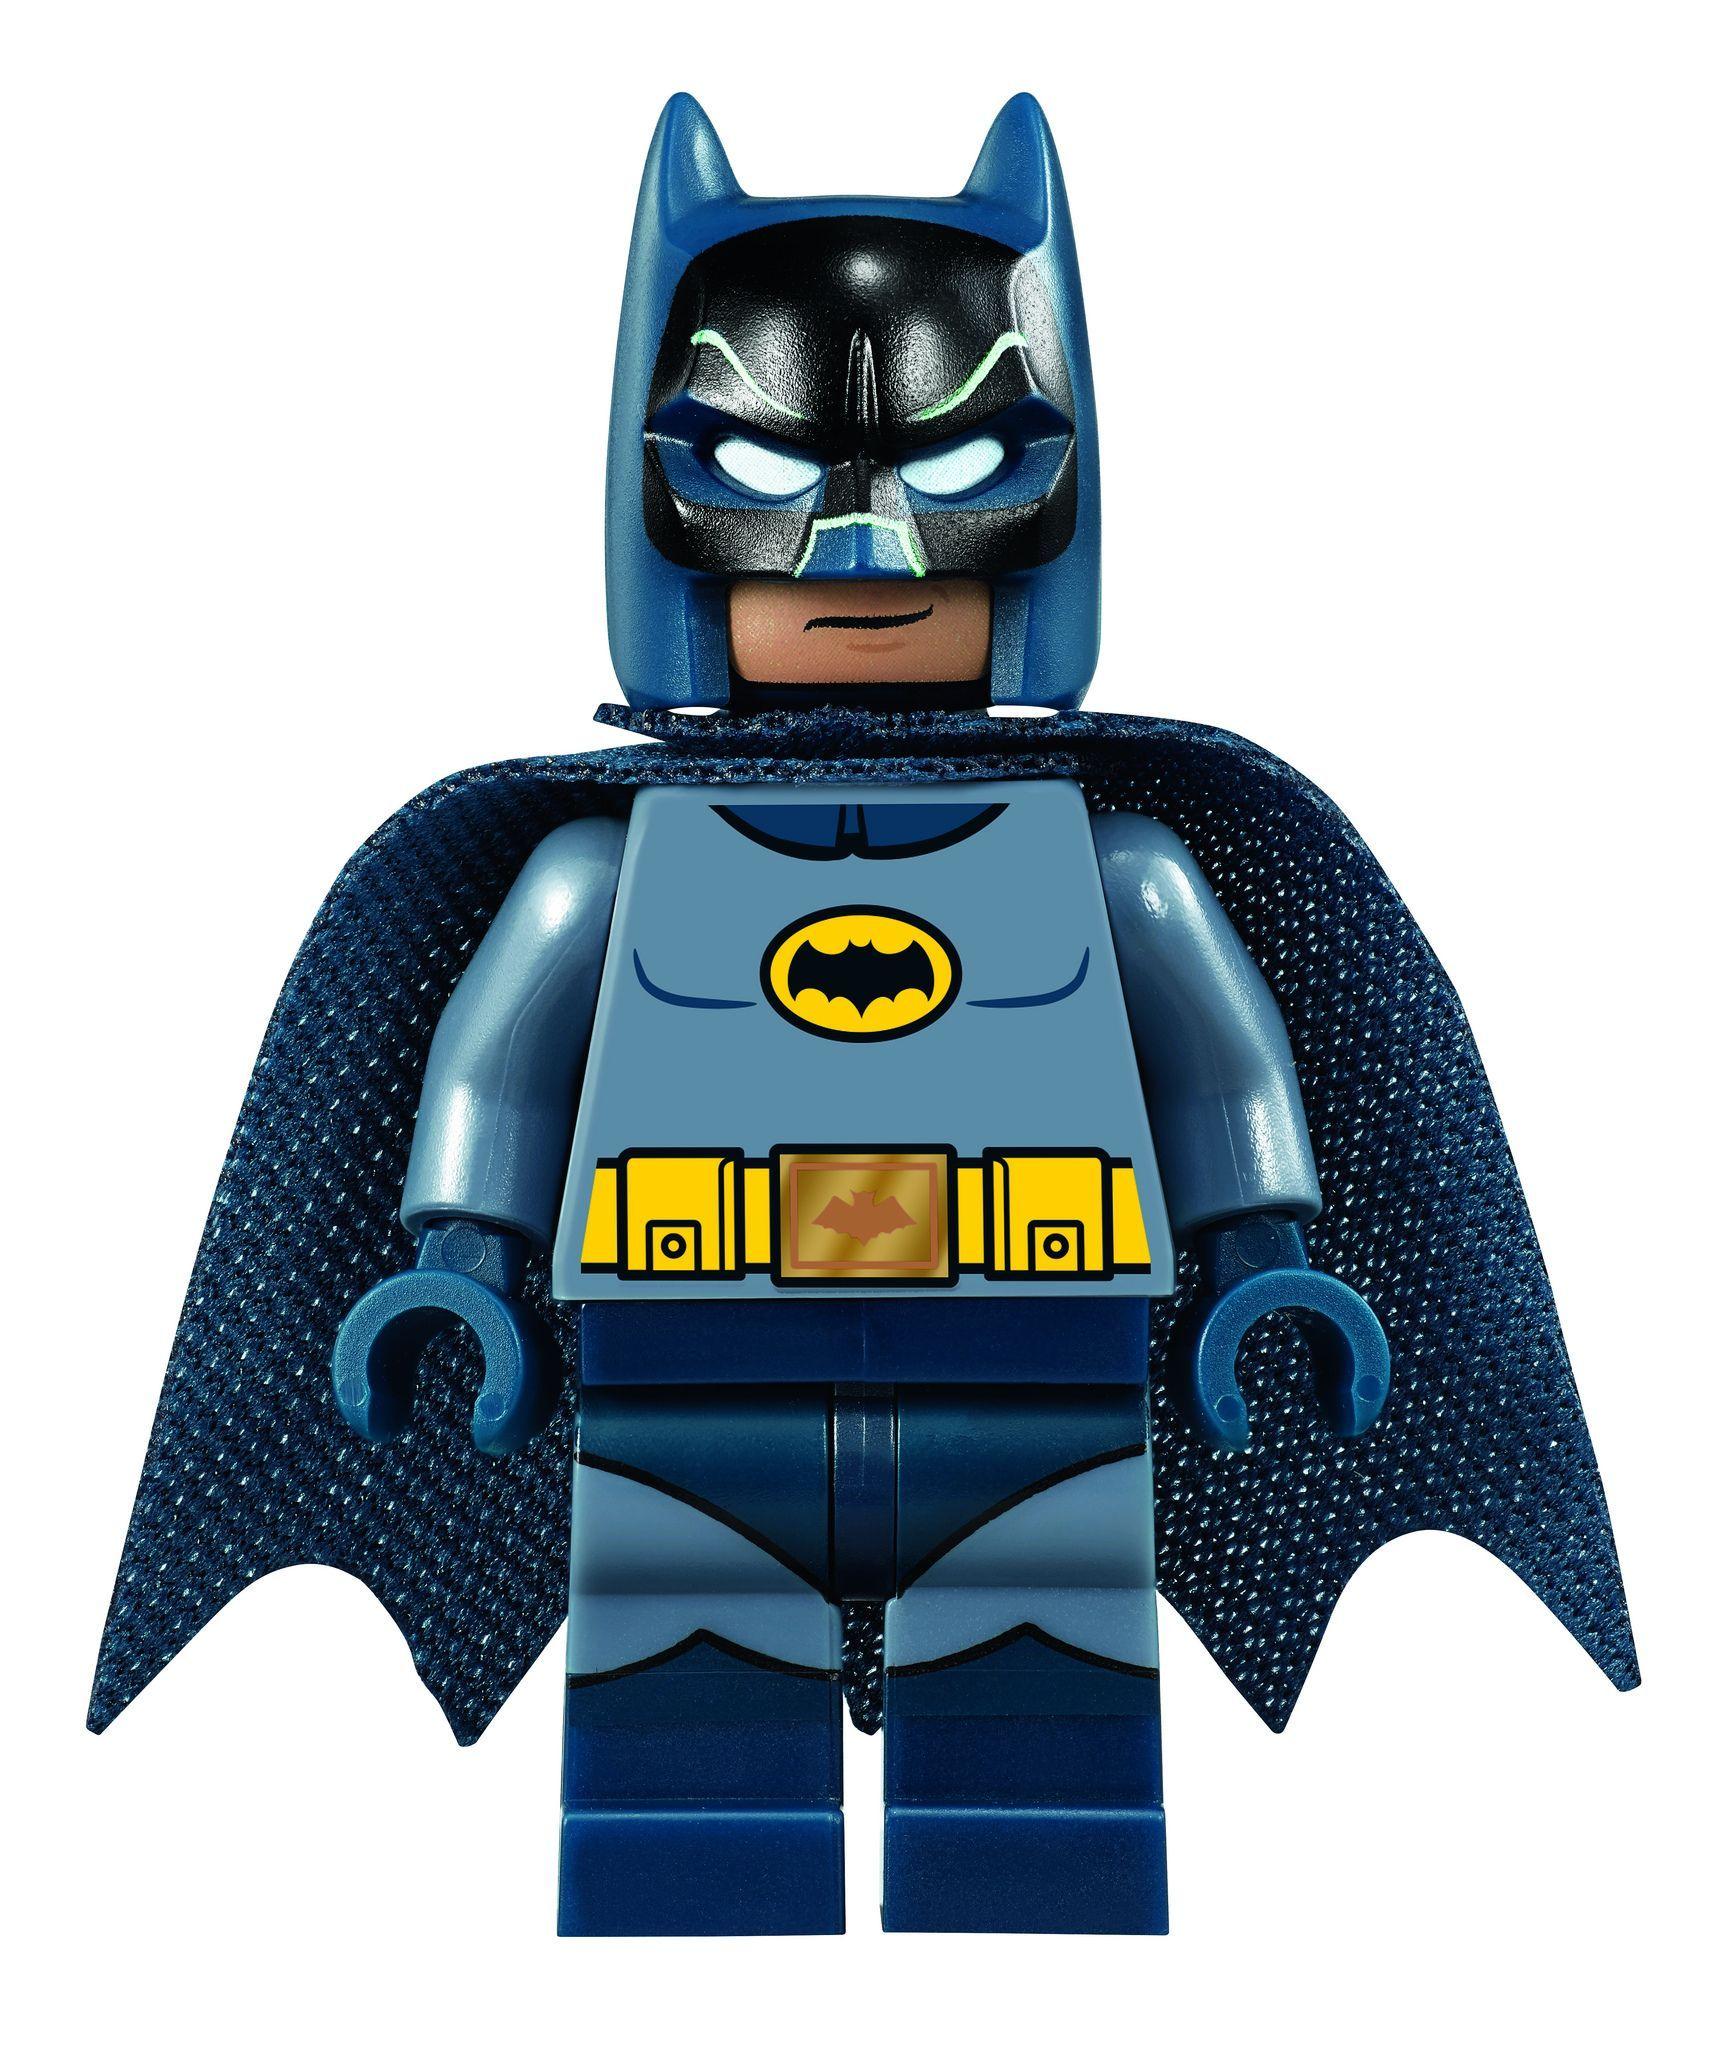 LEGO DC Comics Super Heroes Batman Classic TV Series